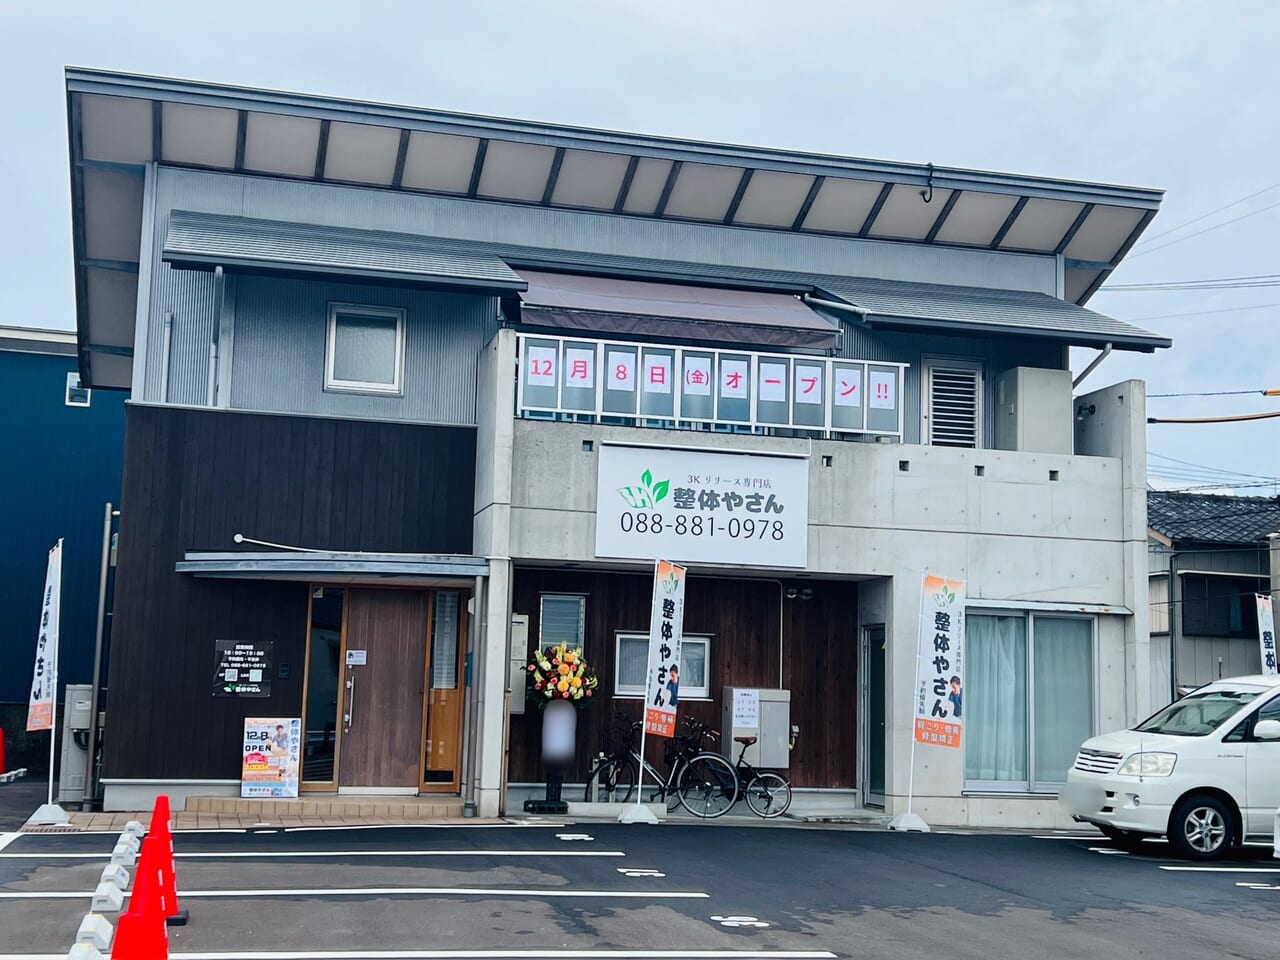 2023年12月8日に高知市玉水町にオープンした「3Kリリース専門店 整体やさん 高知店」の外観